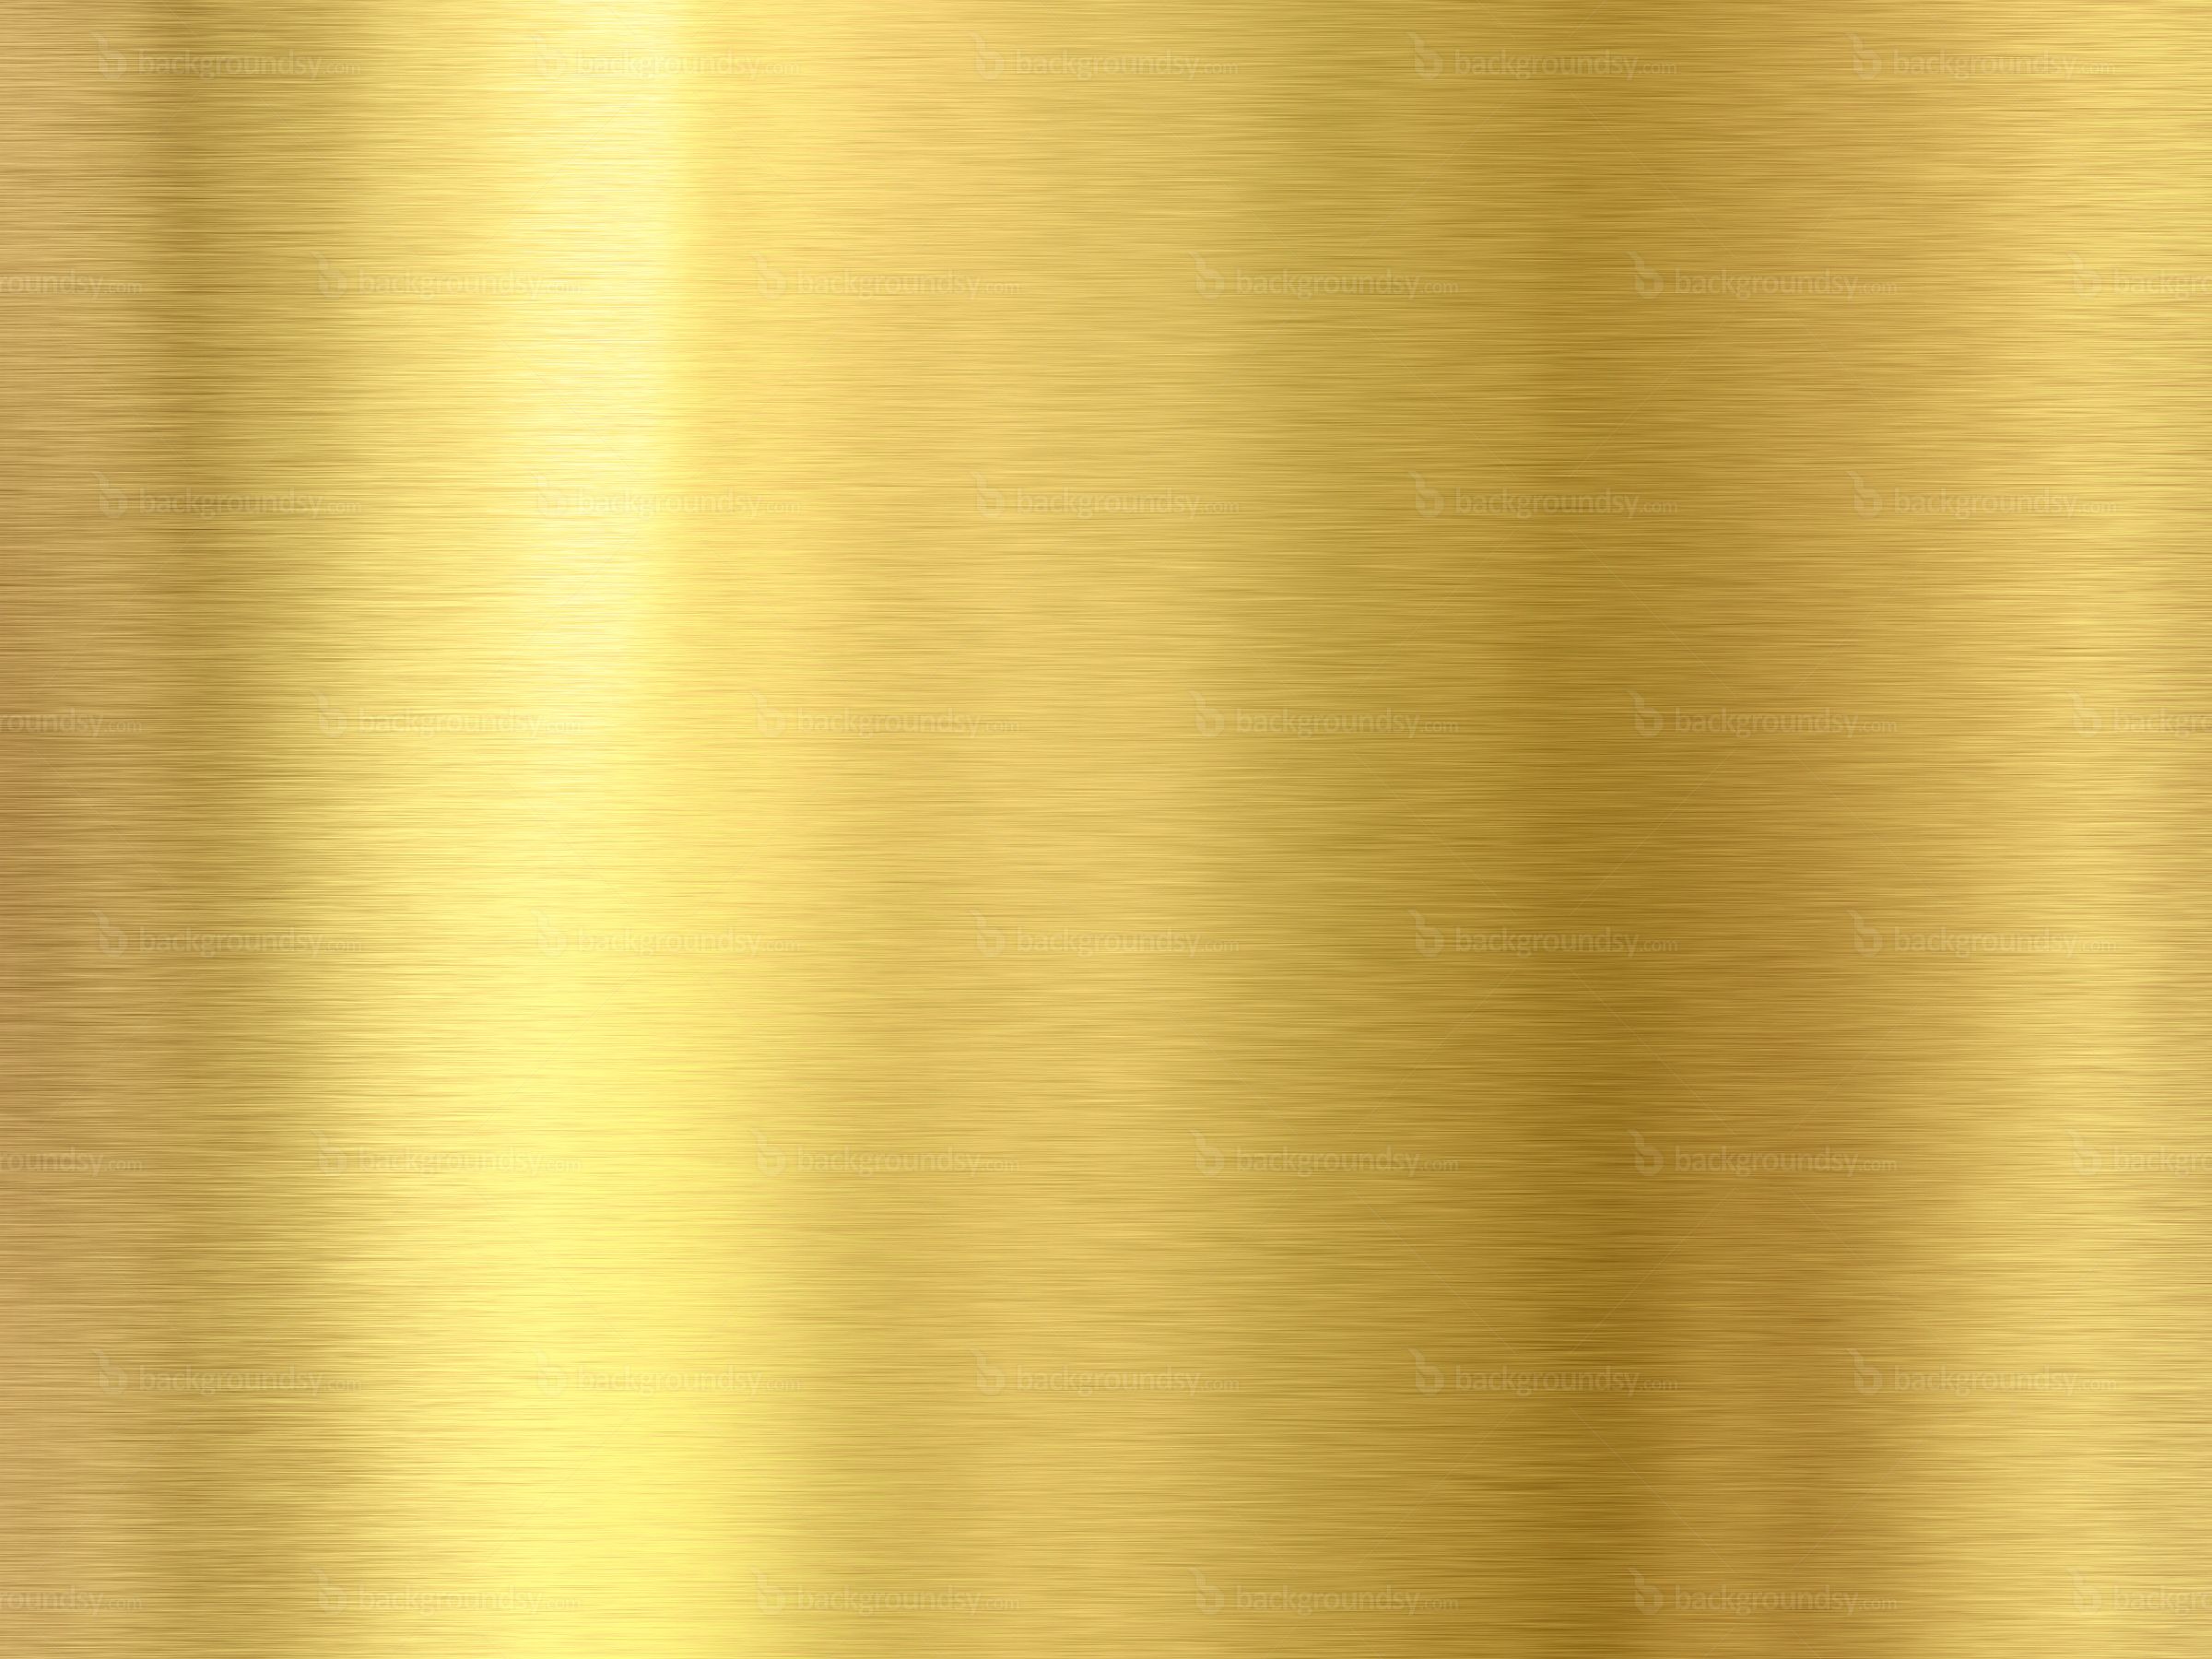 Gold Color | Gold background | Backgroundsy.com | gold | Pinterest ...